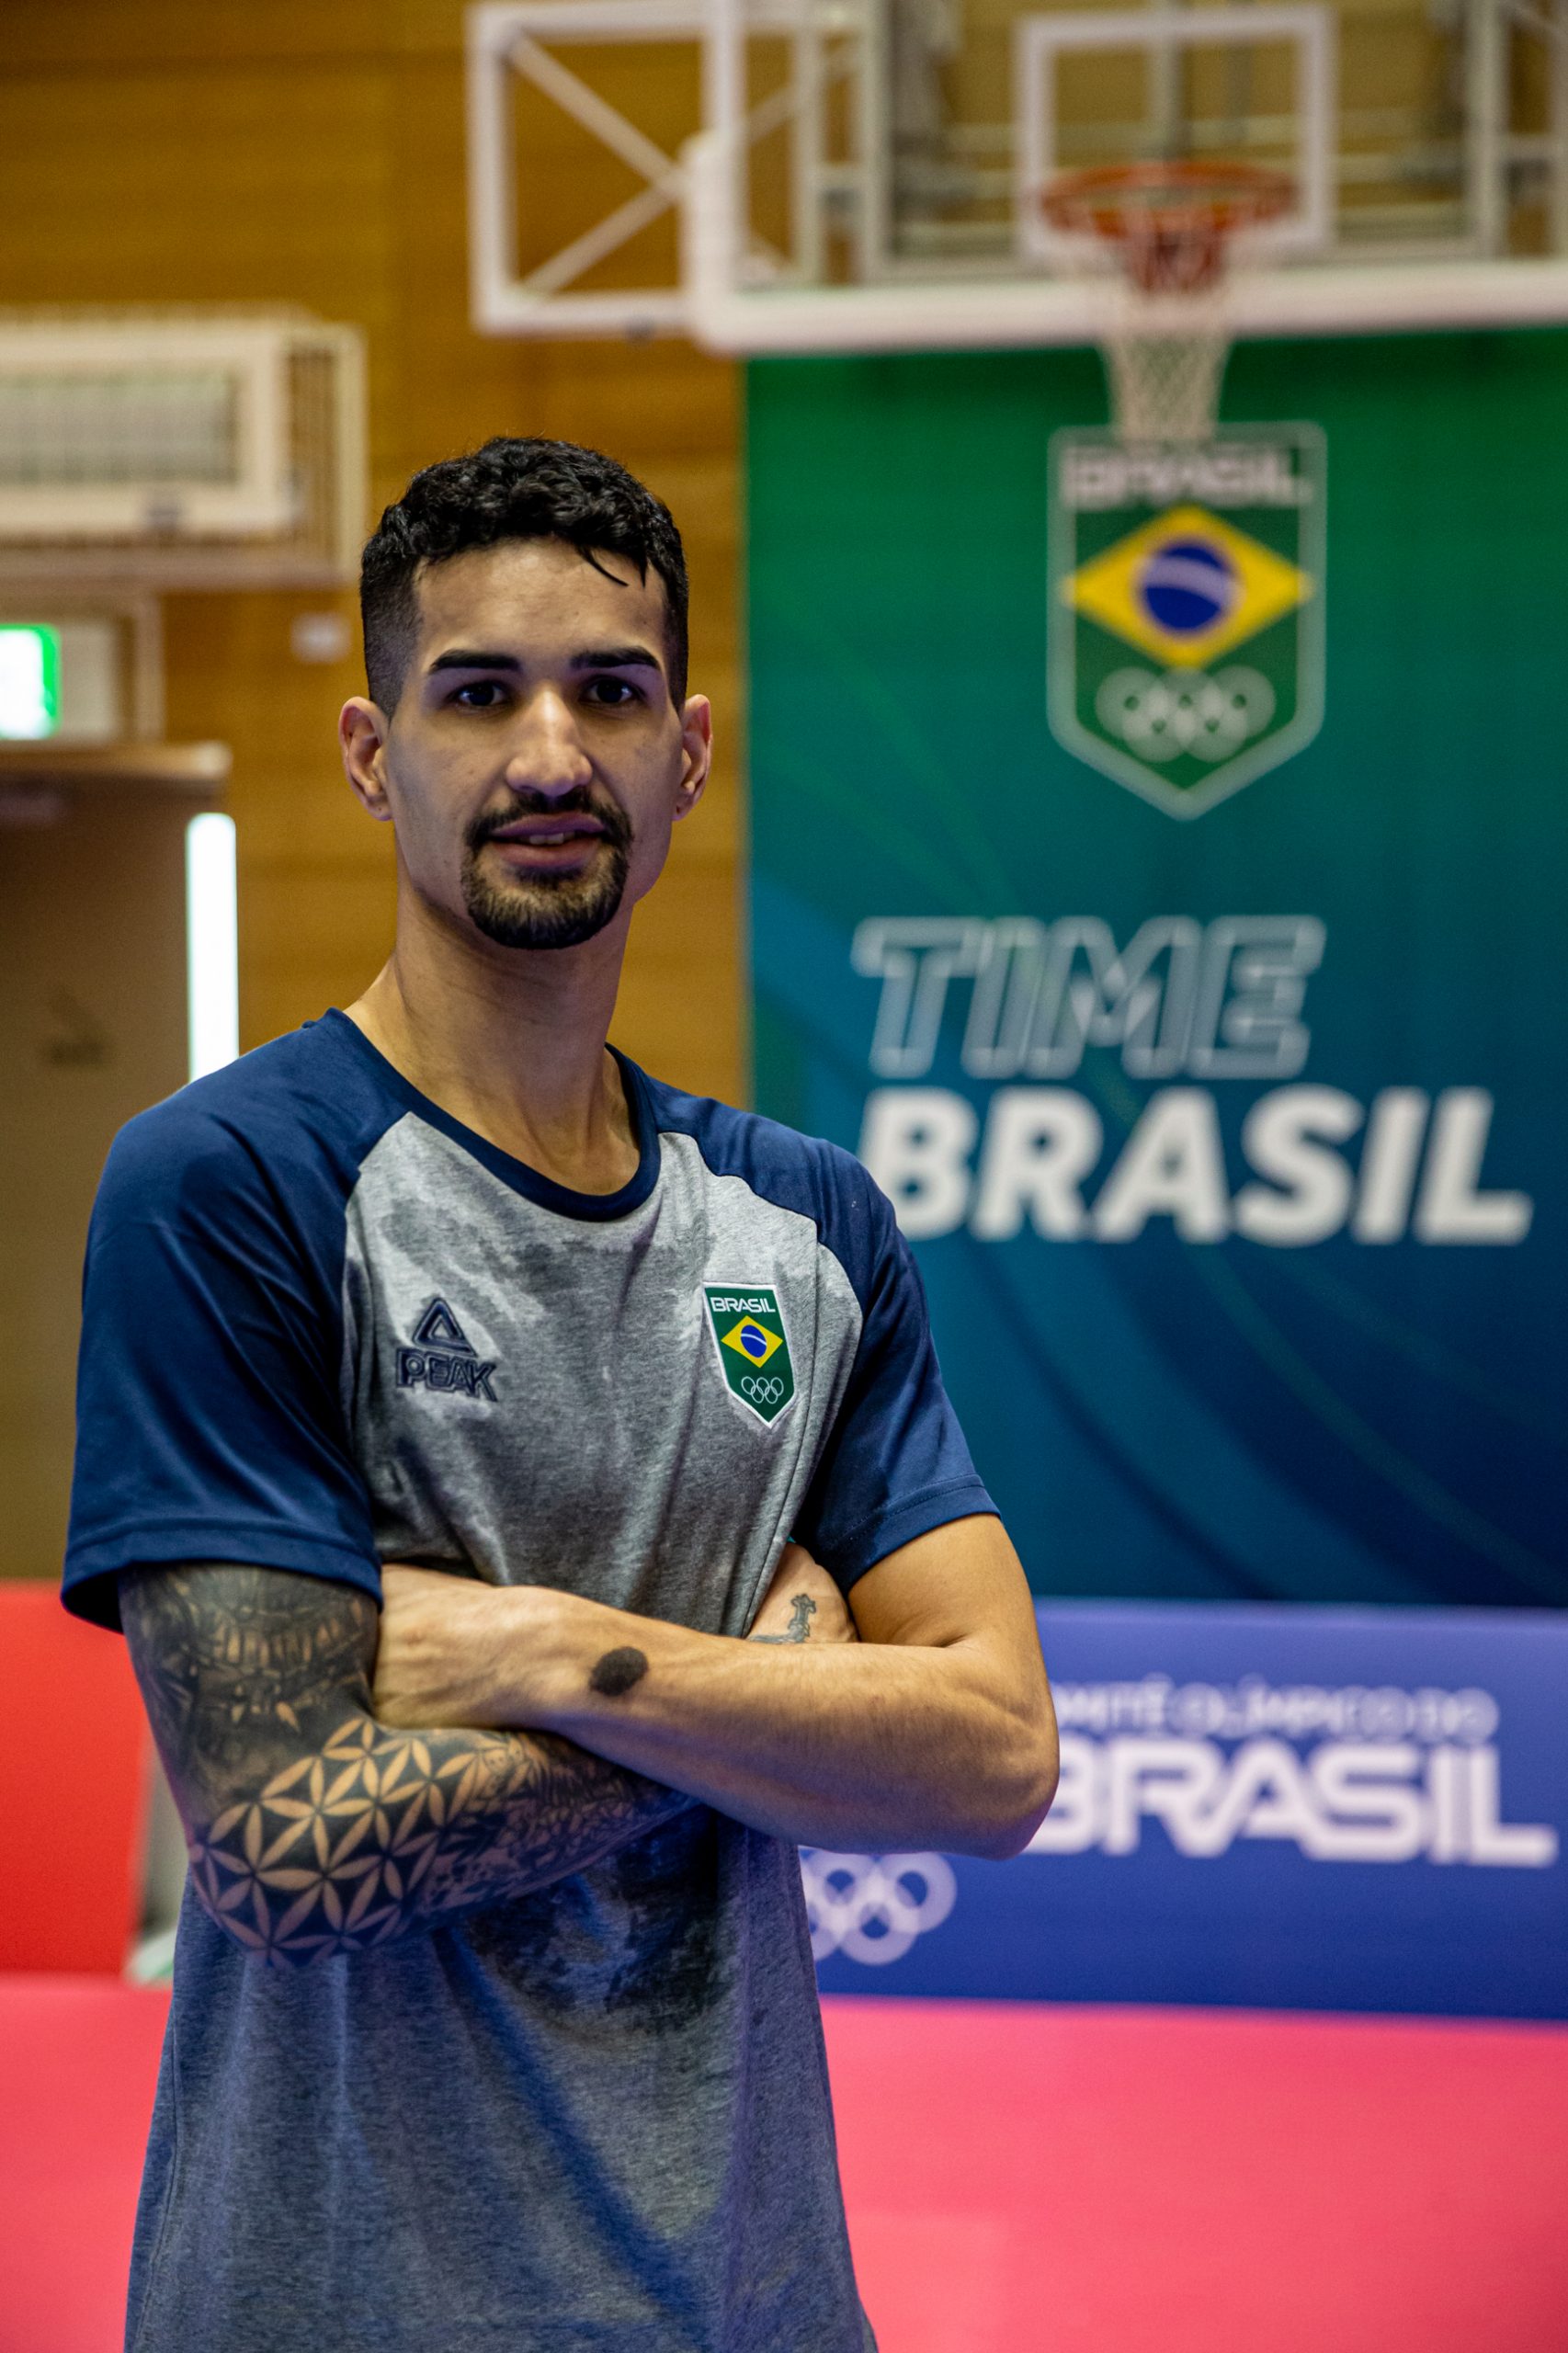 Netinho Marques; Netinho Marques taekwondo; Edival Marques Neto